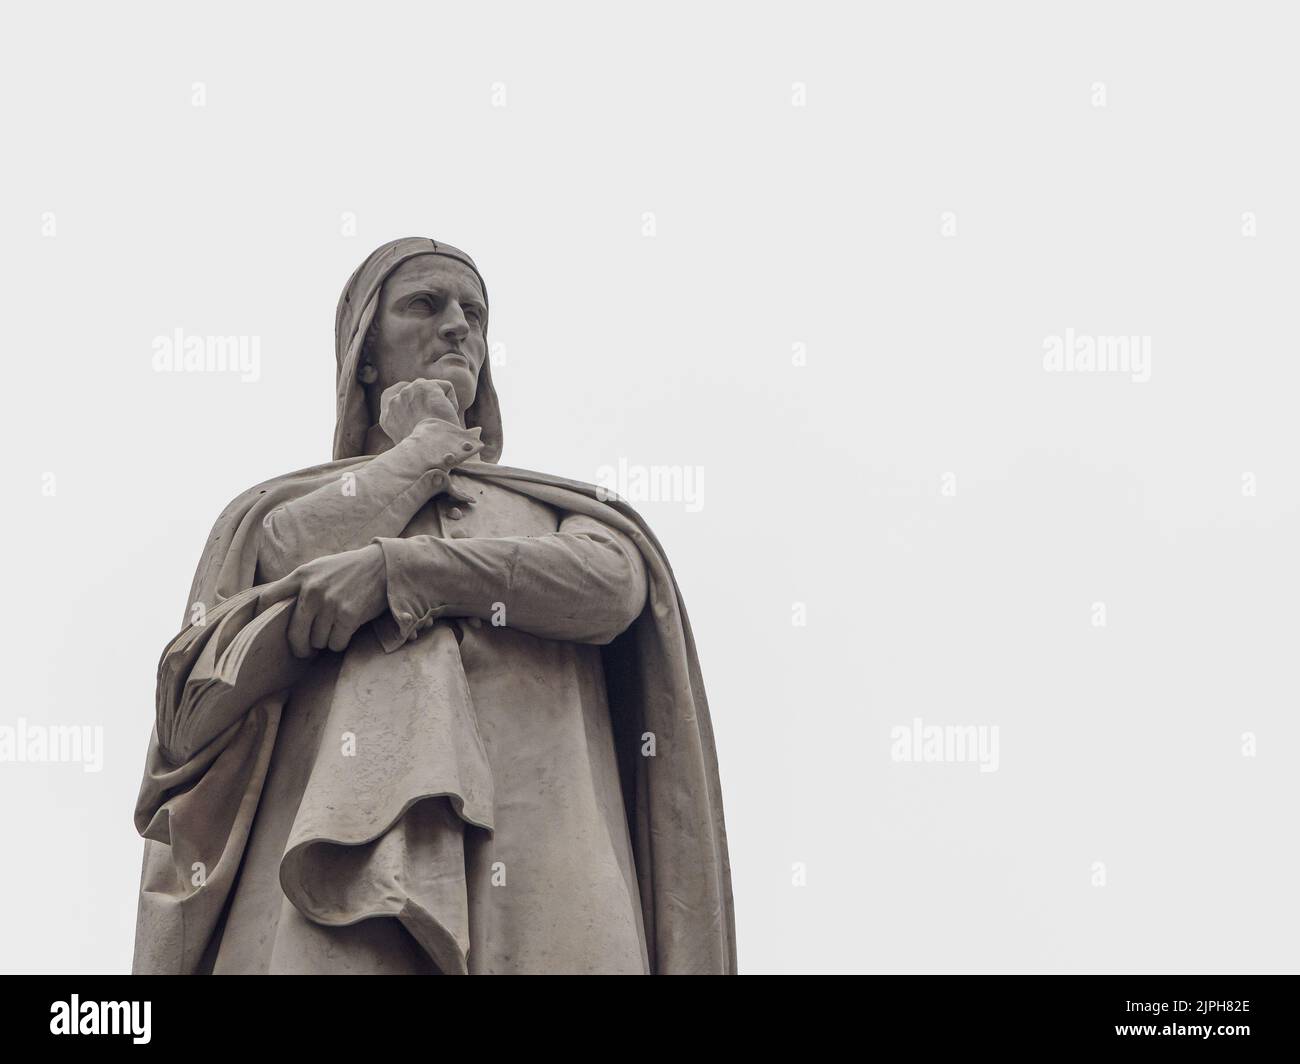 Particolare del monumento Dante Alighieri al centro di Piazza dei Signori, a Verona (19th ° secolo), con spazio copia - città di Verona - Italia settentrionale, de Foto Stock